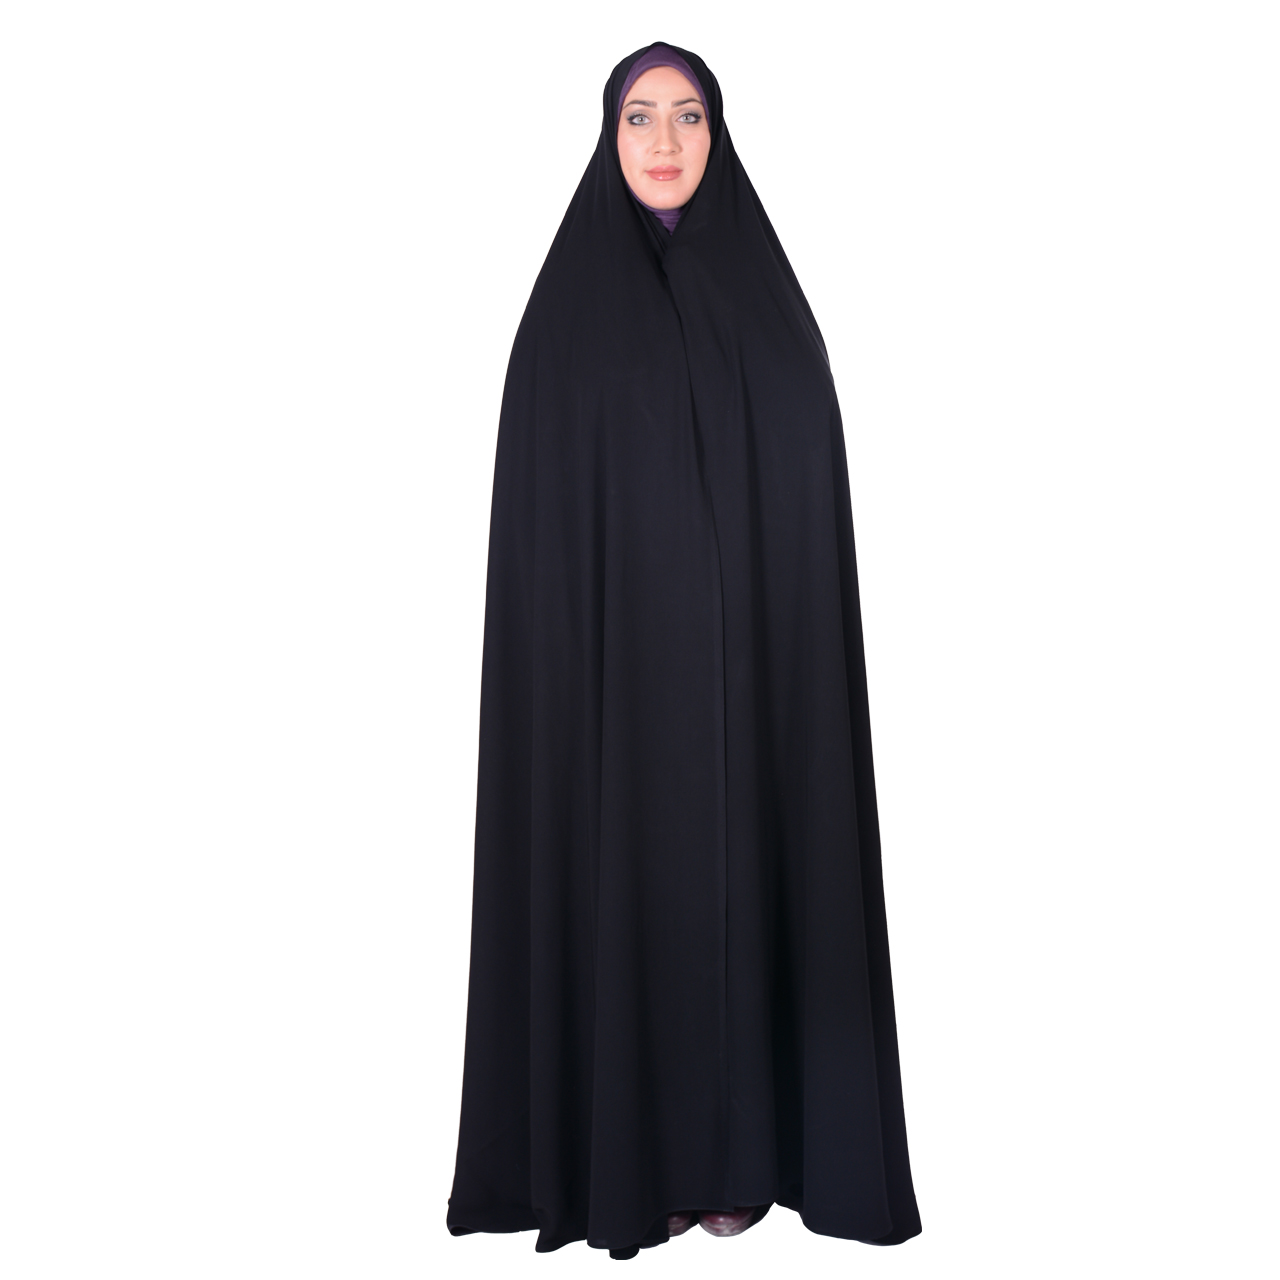 نکته خرید - قیمت روز چادر سنتی شهر حجاب مدل ایرانی تایتانیک کریستال VIP کد 8008 خرید